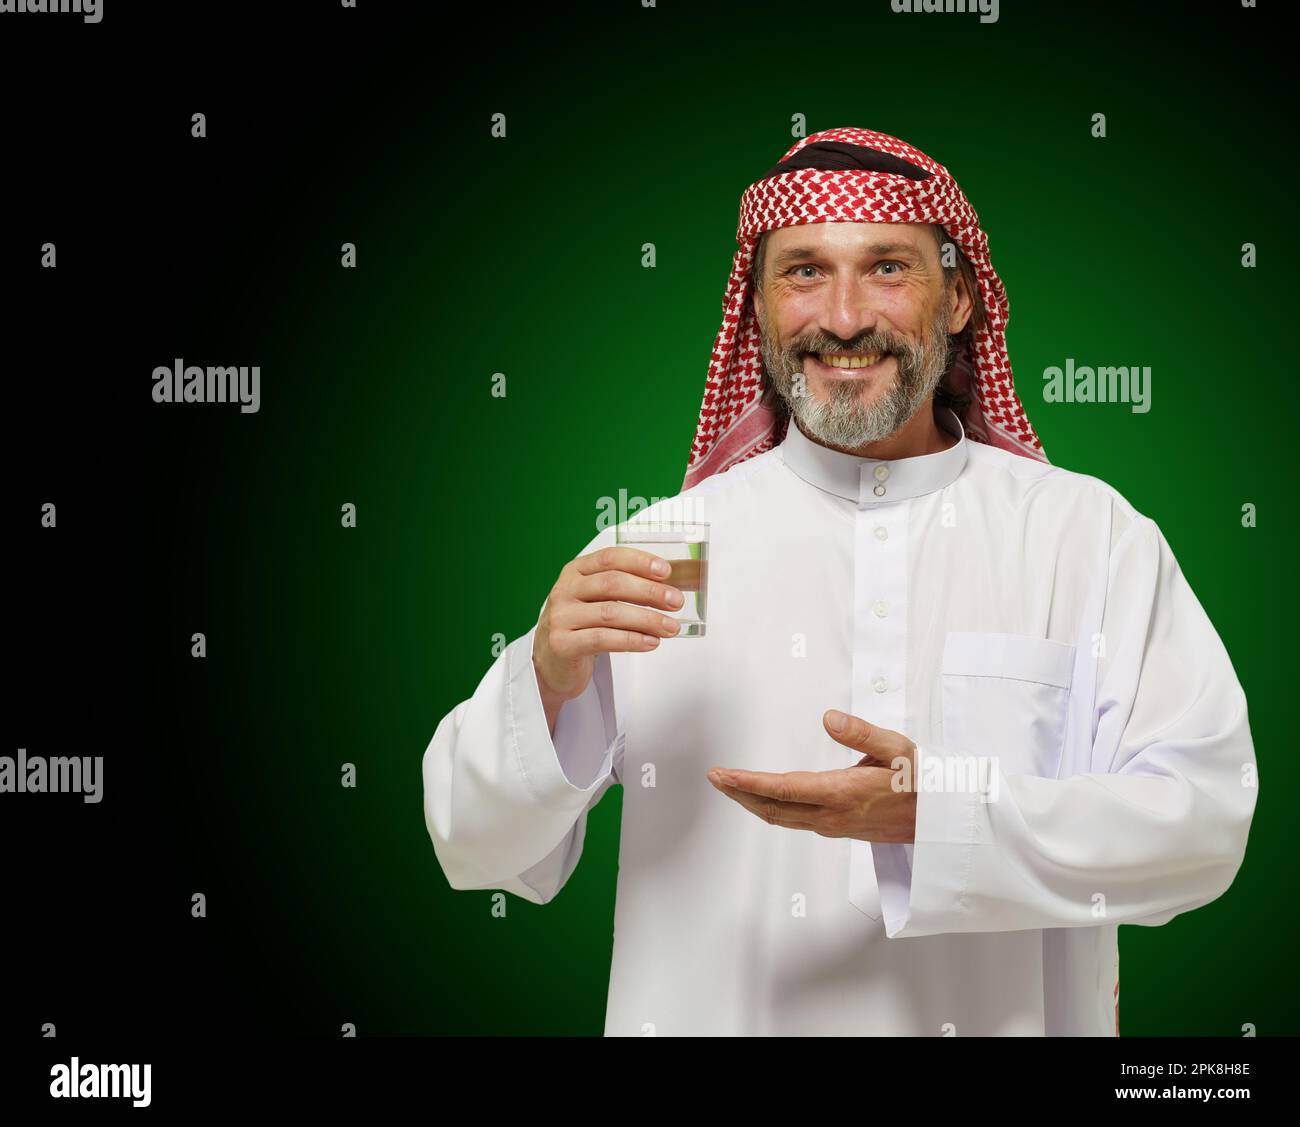 Ein arabischer Mann, der ein Glas Wasser hält und das Gefühl von gesundem Leben und Achtsamkeit vermittelt. Es betont die Bedeutung von Hydration und Wellness in der nahöstlichen Kultur, wodurch es ideal für den Einsatz in der Gesundheit. Hochwertiges Foto Stockfoto